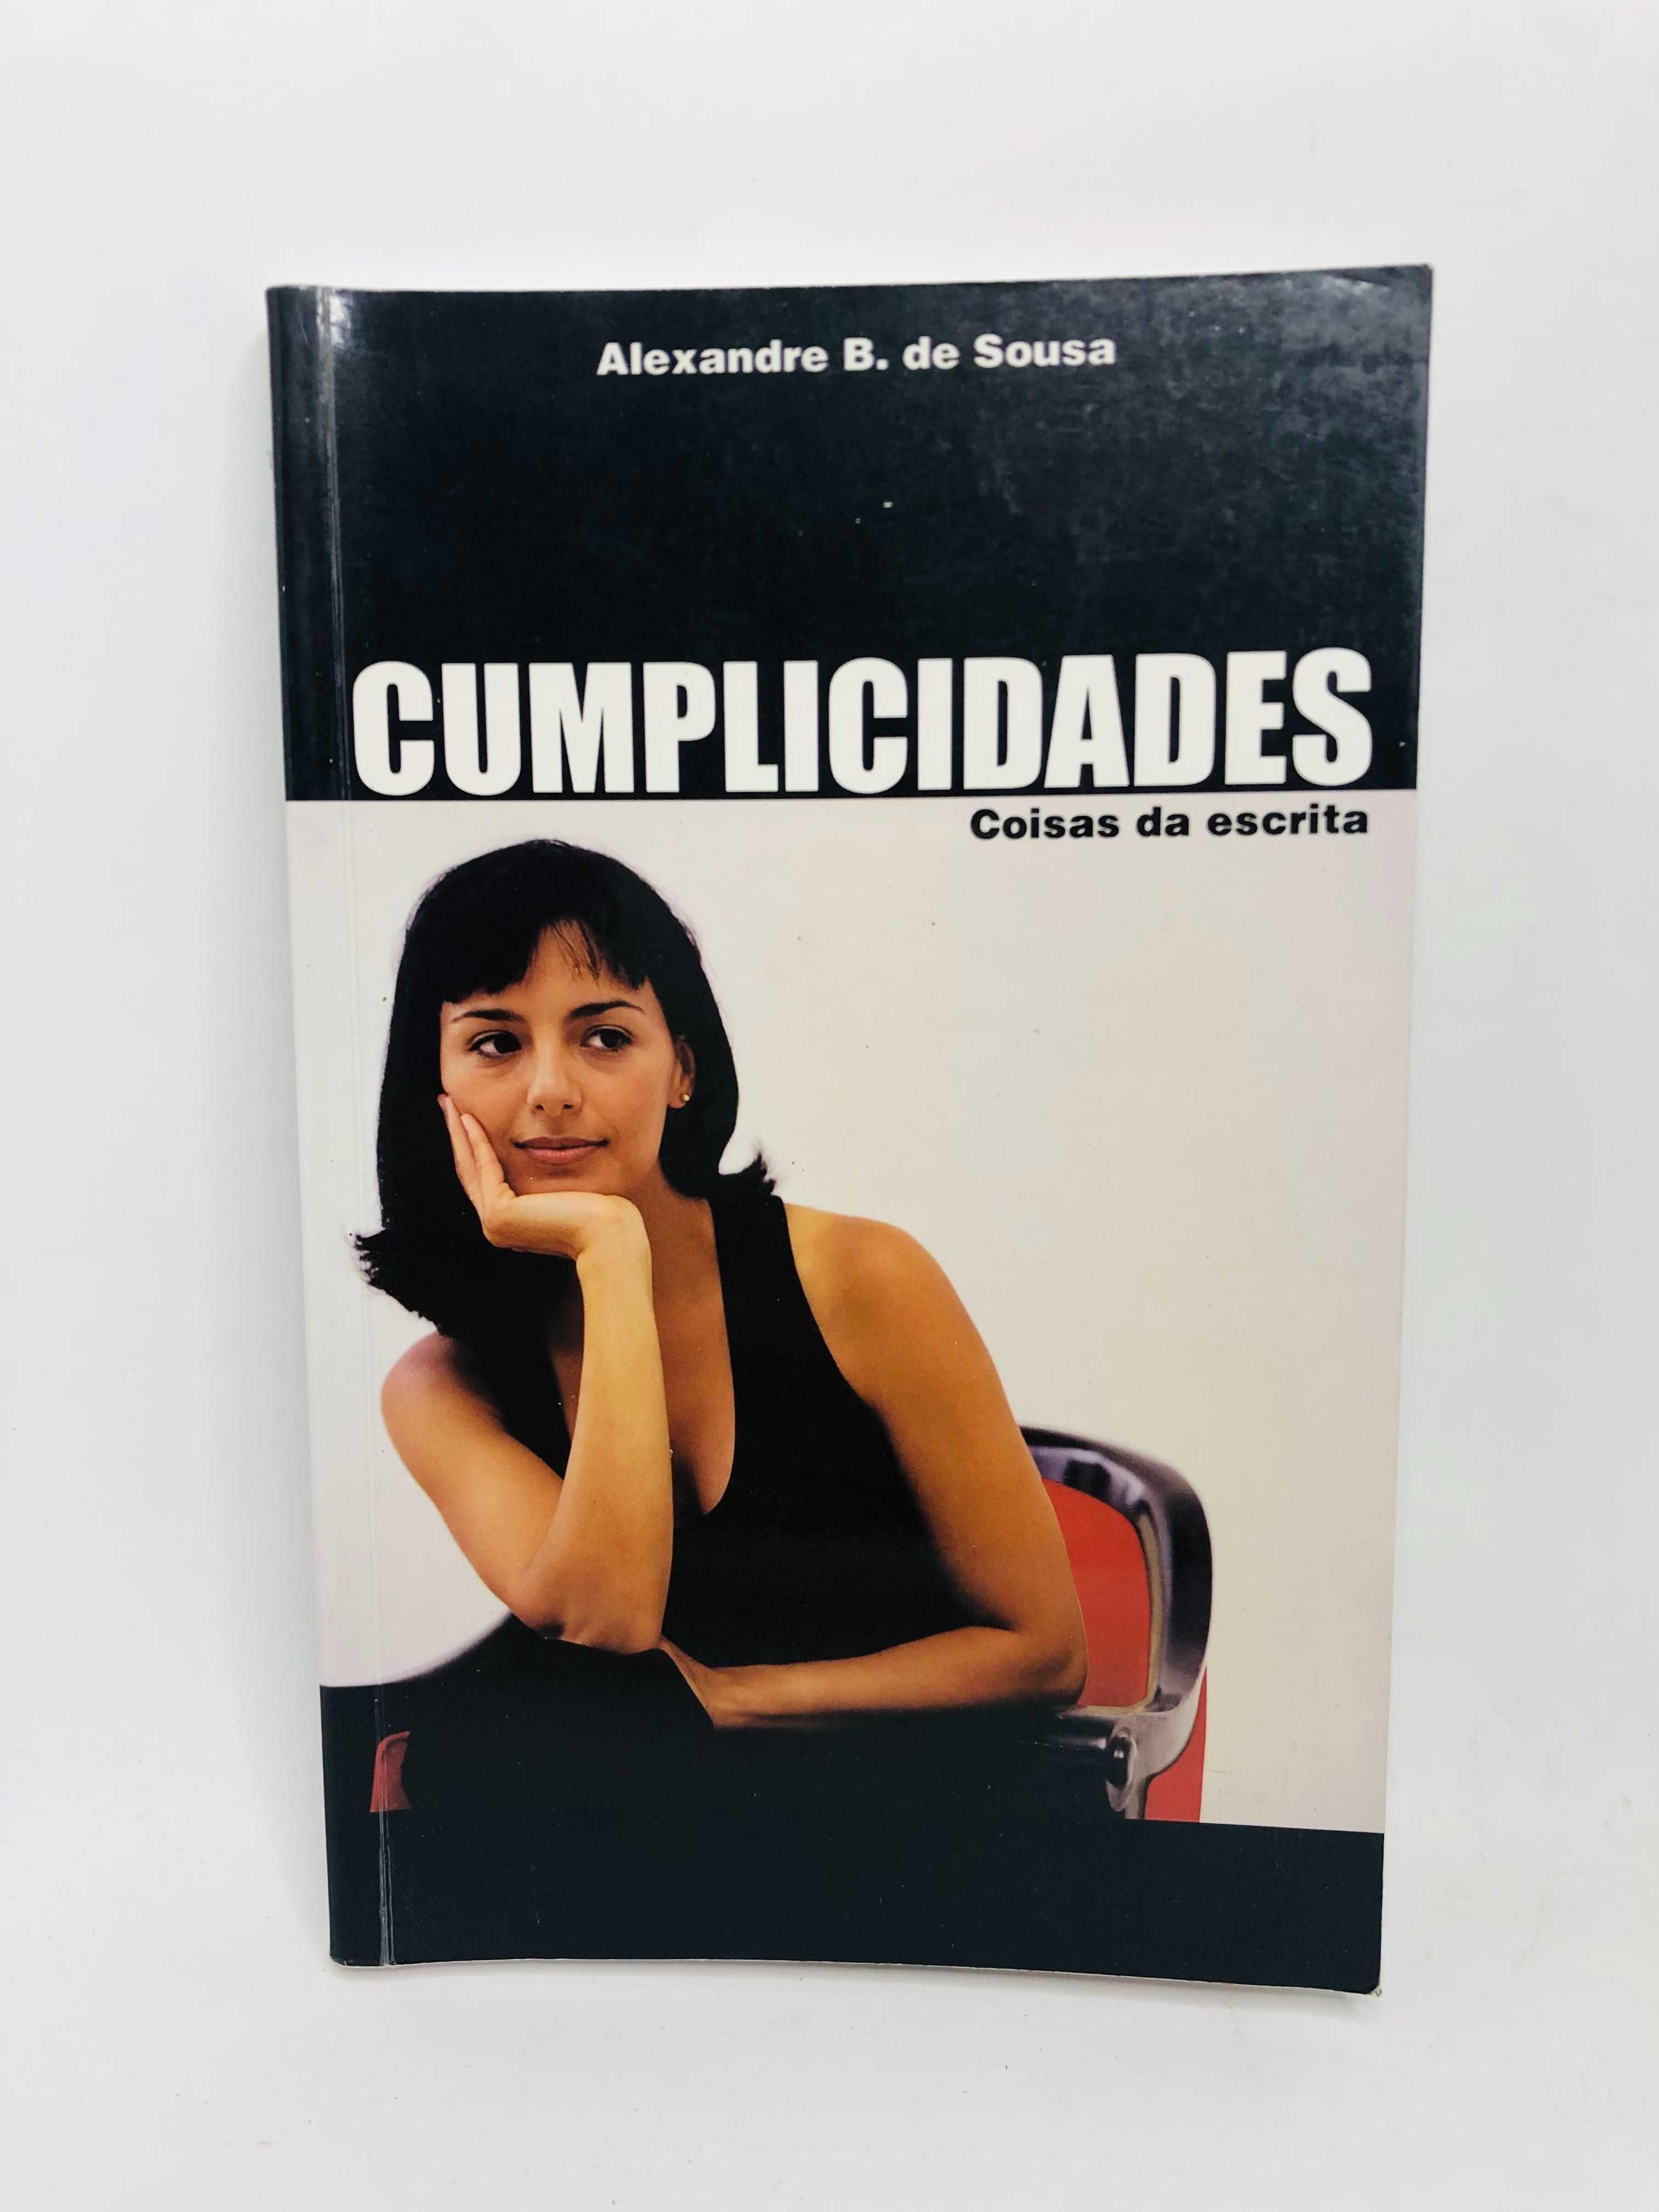 Cumplicidades (coisas da escrita) - Alexandre B. de Sousa